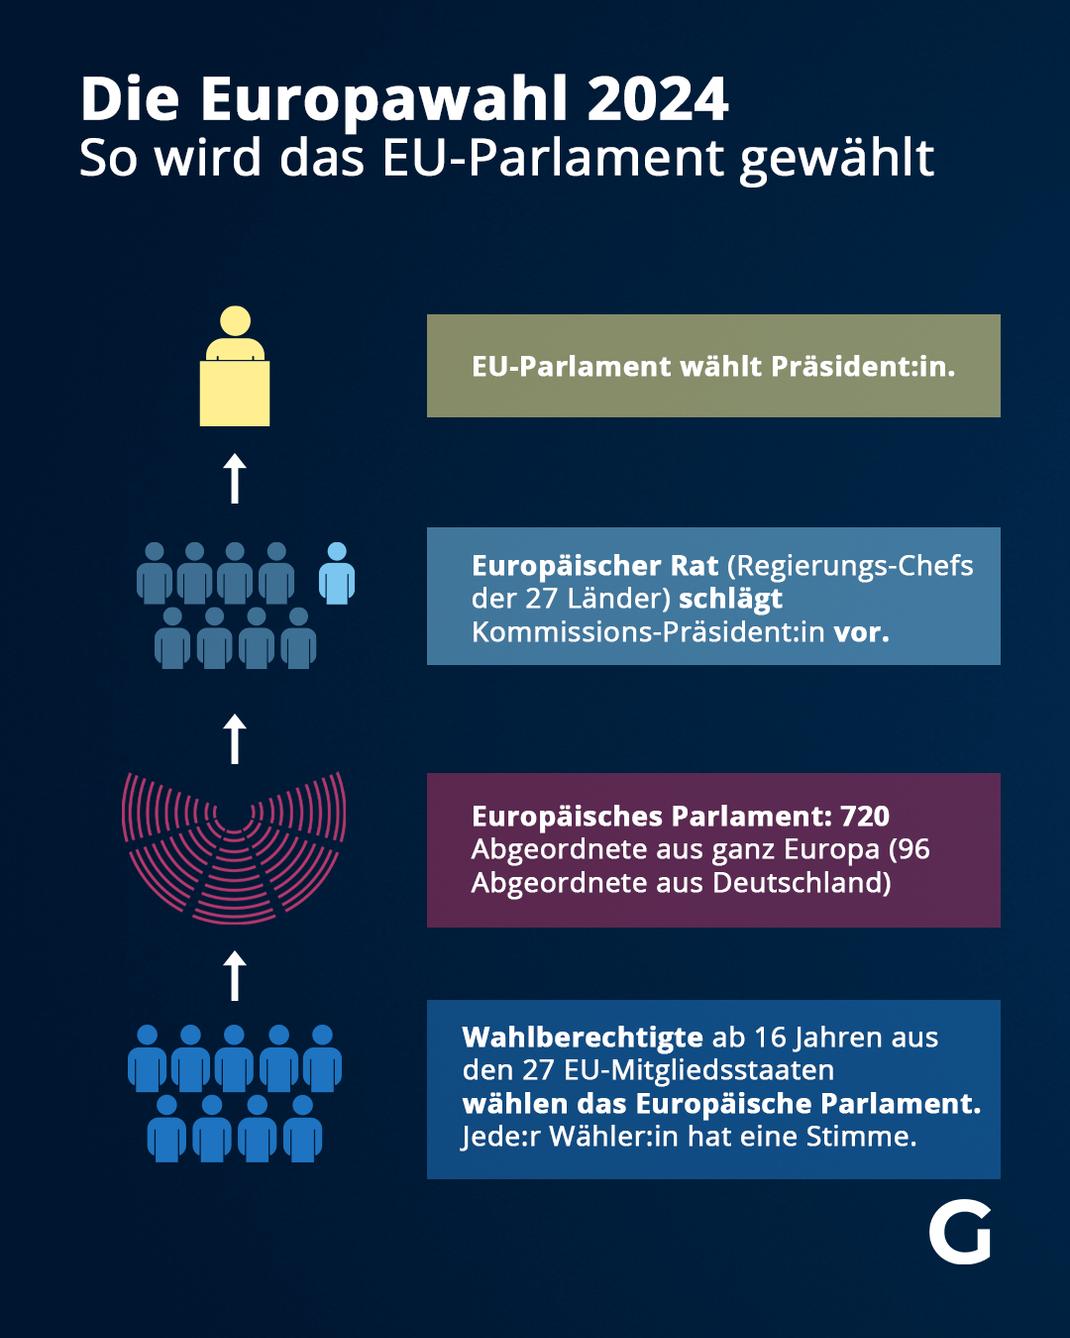 Die Europawahl 2024 - So wird das EU-Parlament gewählt